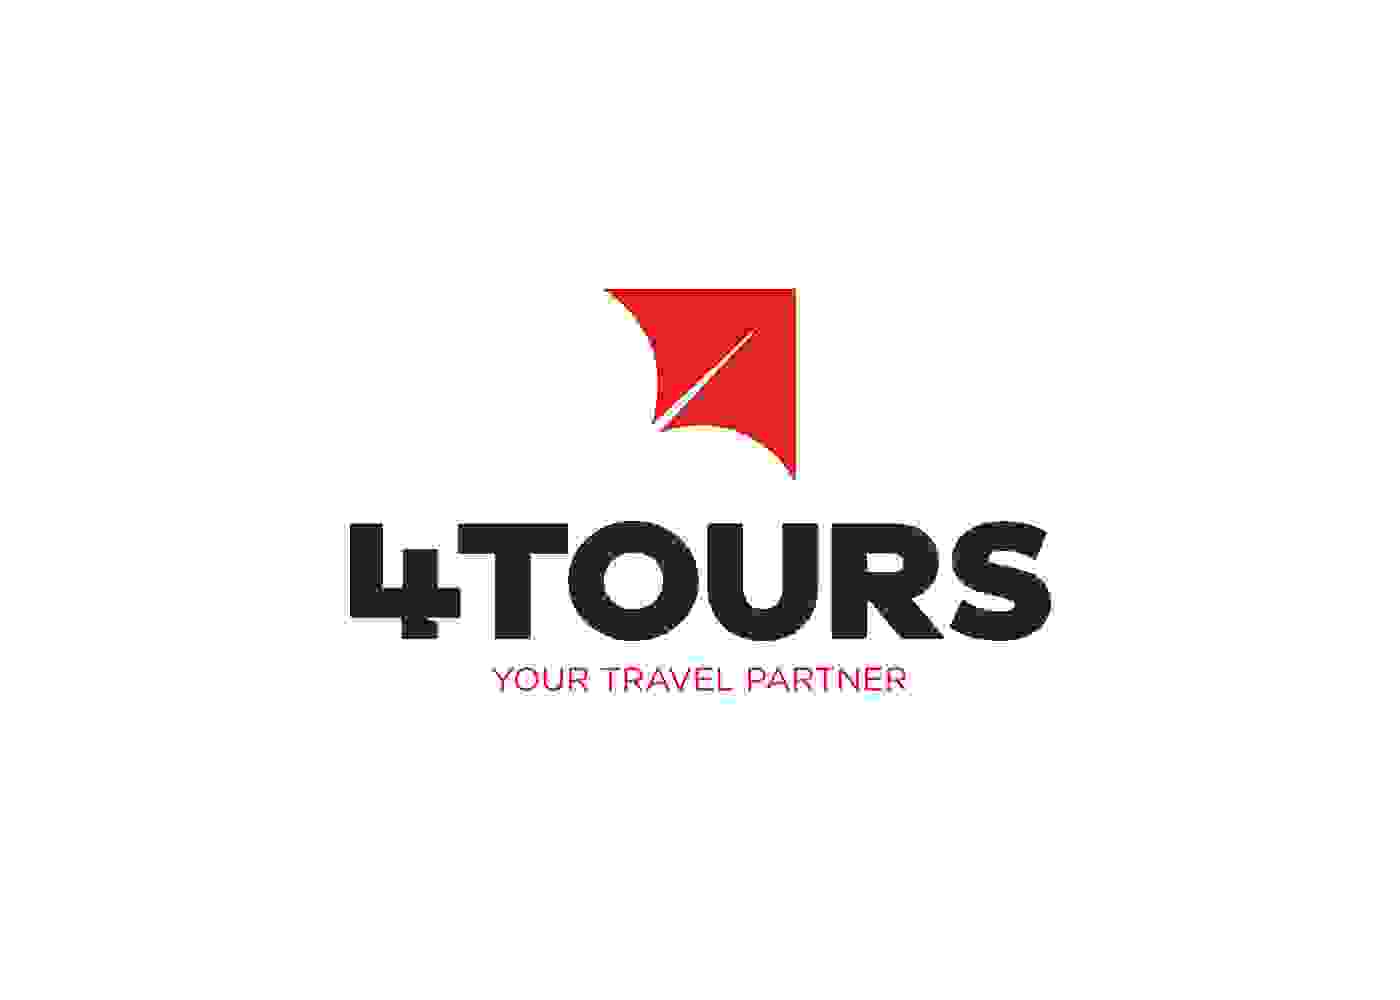 ulahlah-4tours-logo